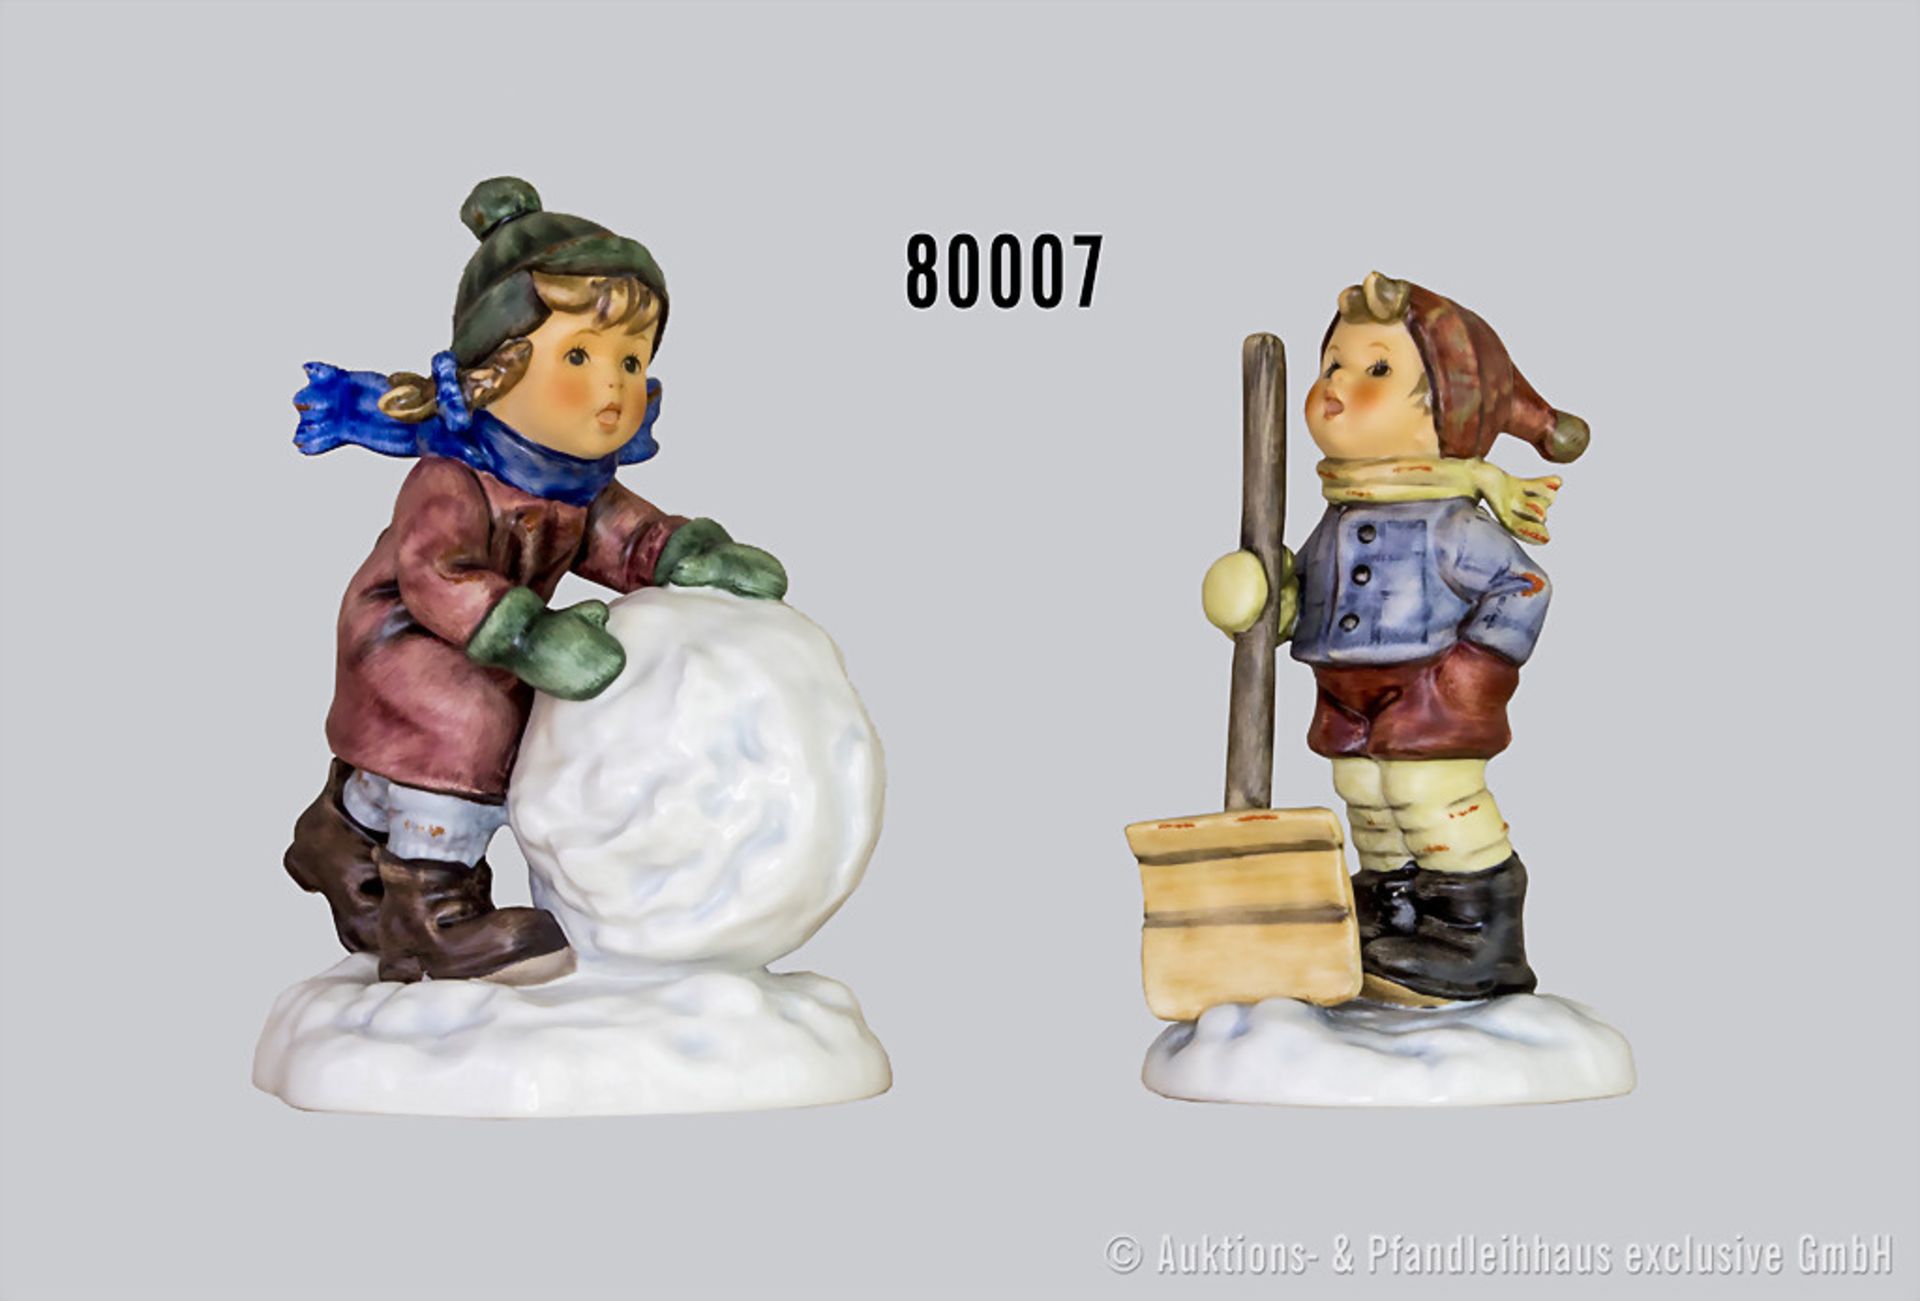 Konv. Goebel Hummel Figuren "Winterzauber", dabei 2035 "Mei, ist die schwer" und 2036 "Hoffentlich